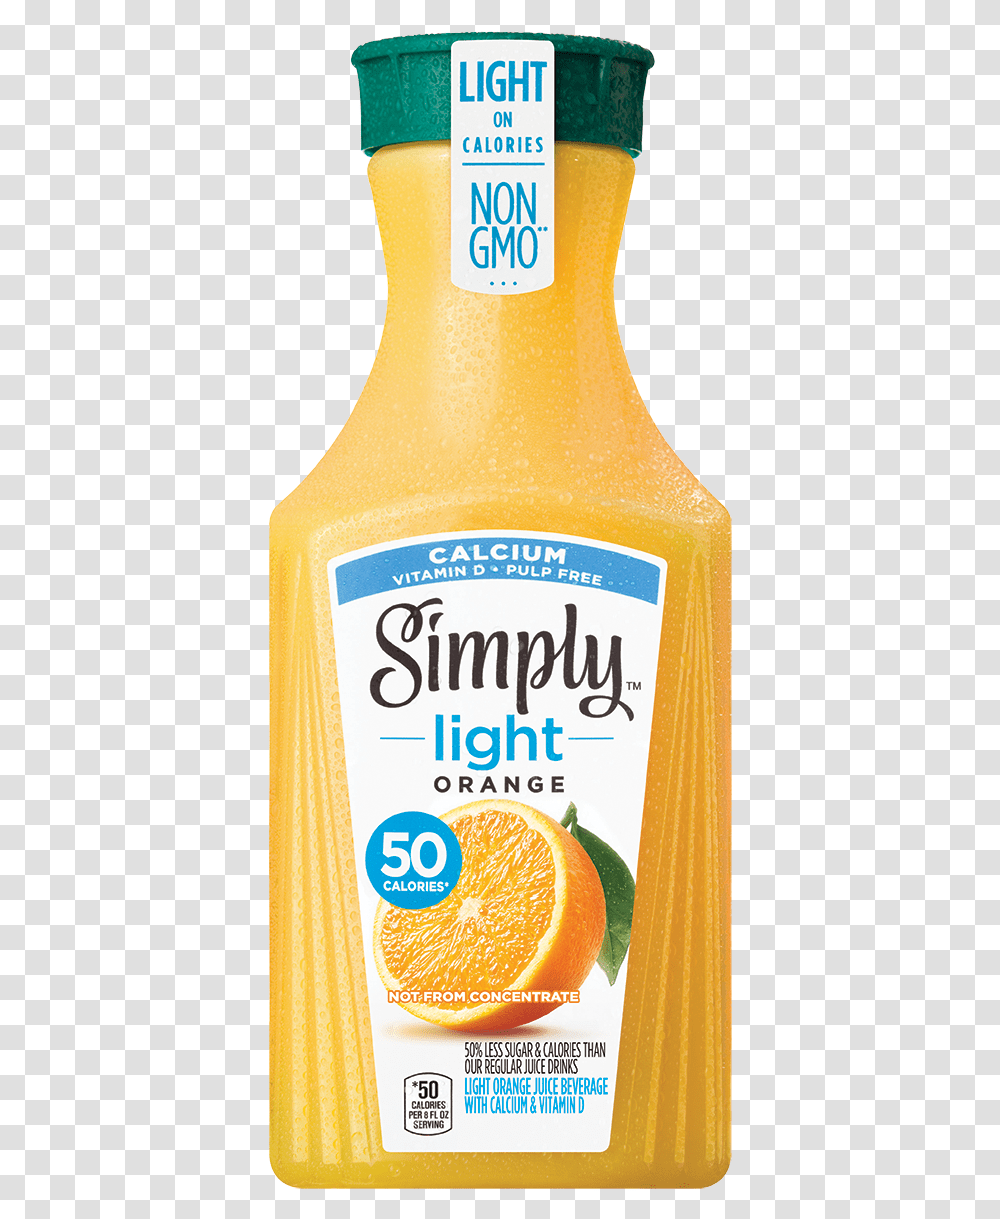 Simply Orange Juice Light Orange With Calcium Simply Orange Juice Plus Calcium, Beverage, Drink, Beer, Alcohol Transparent Png